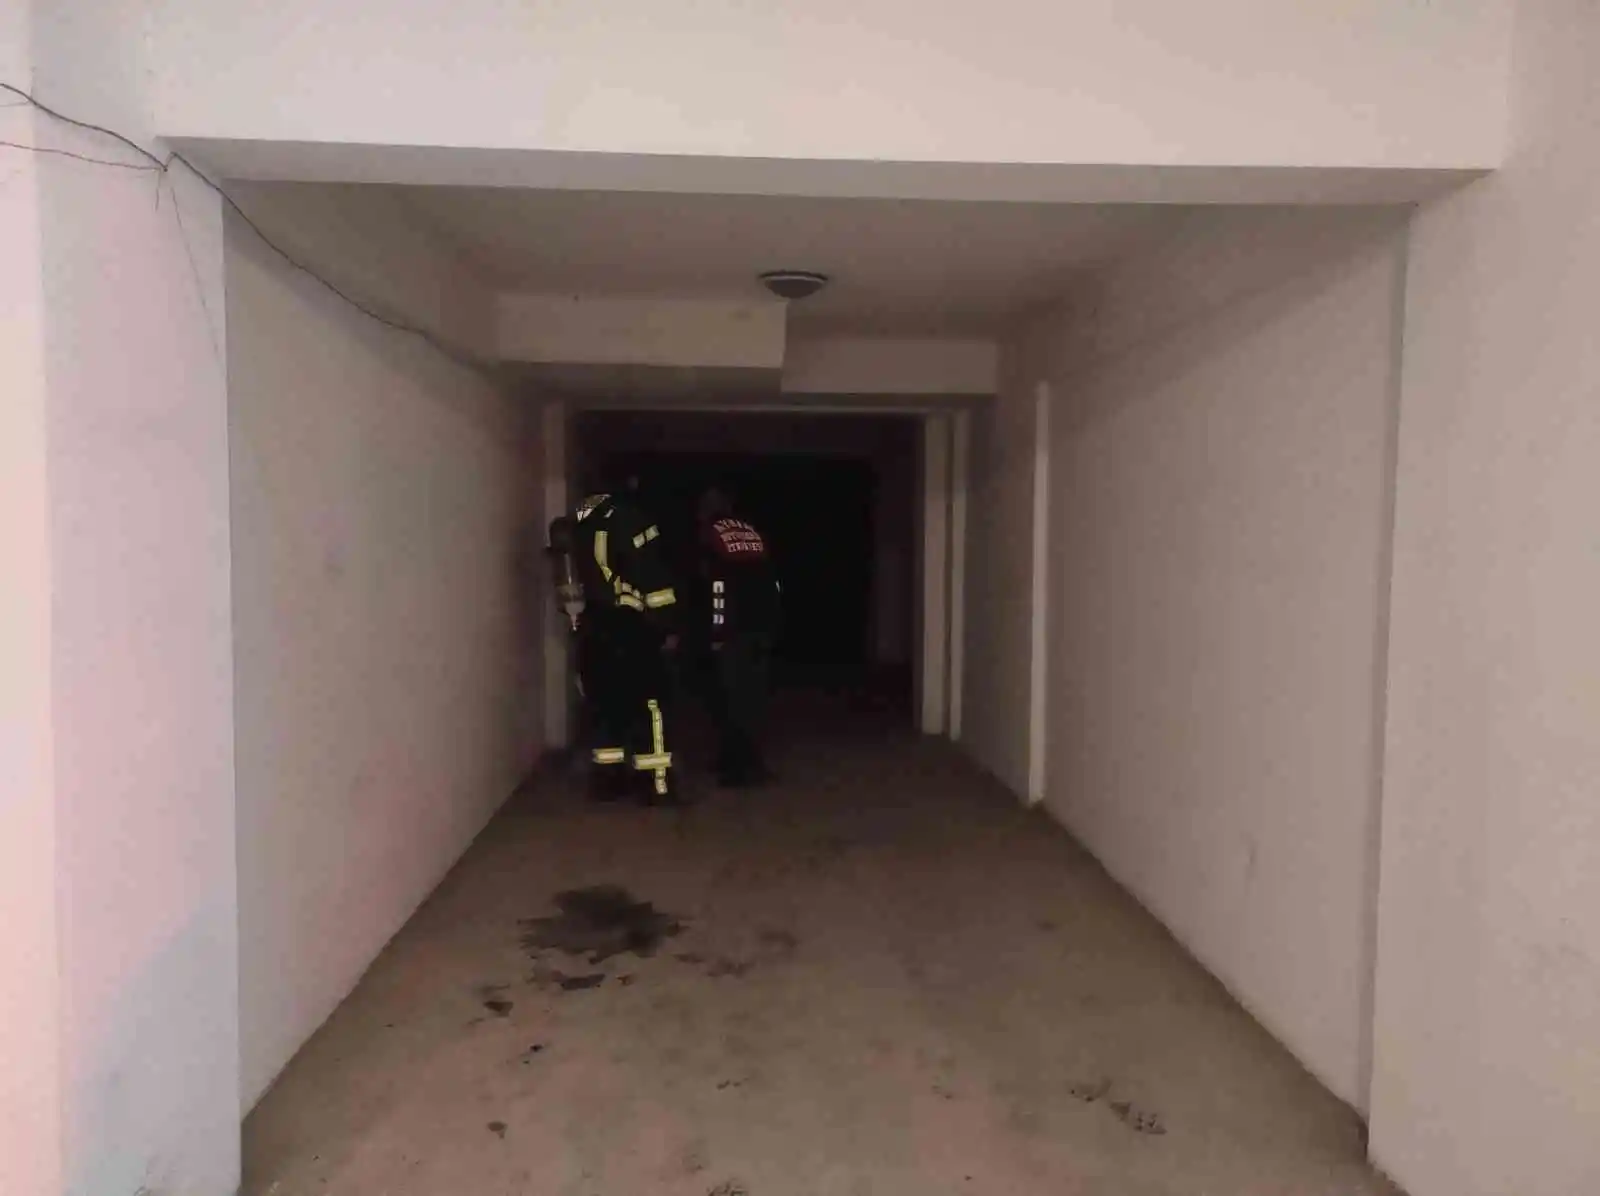 Apartmanın bodrum katında çıkan yangın korkuttu
